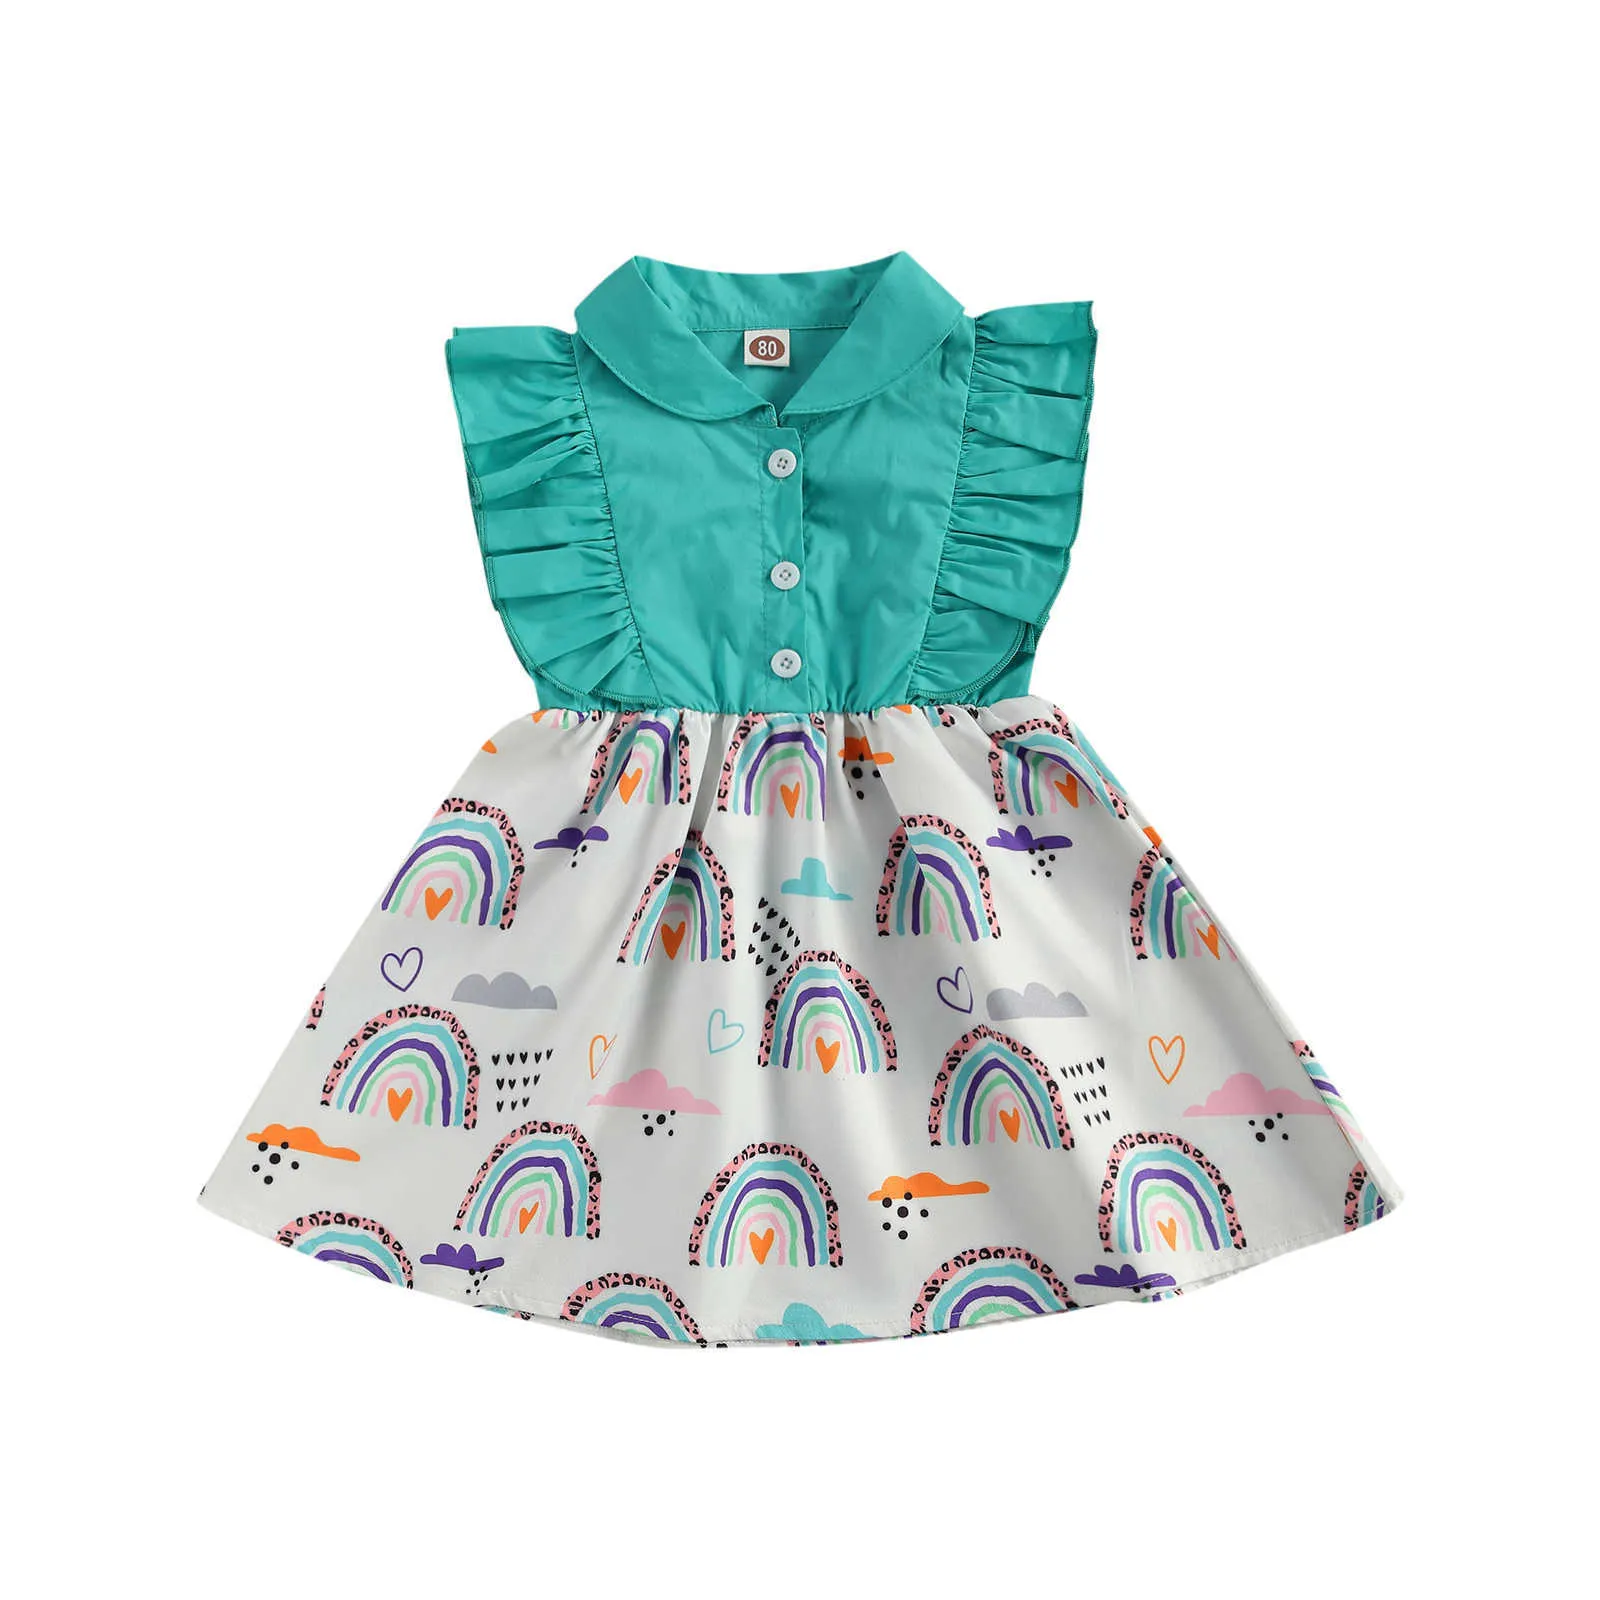 Citgeett Summer Toddler Baby Girls Princess Dress Ruffle Sleeveless Buttons Rainbow Printed Patchwork Sundress Clothes Q0716